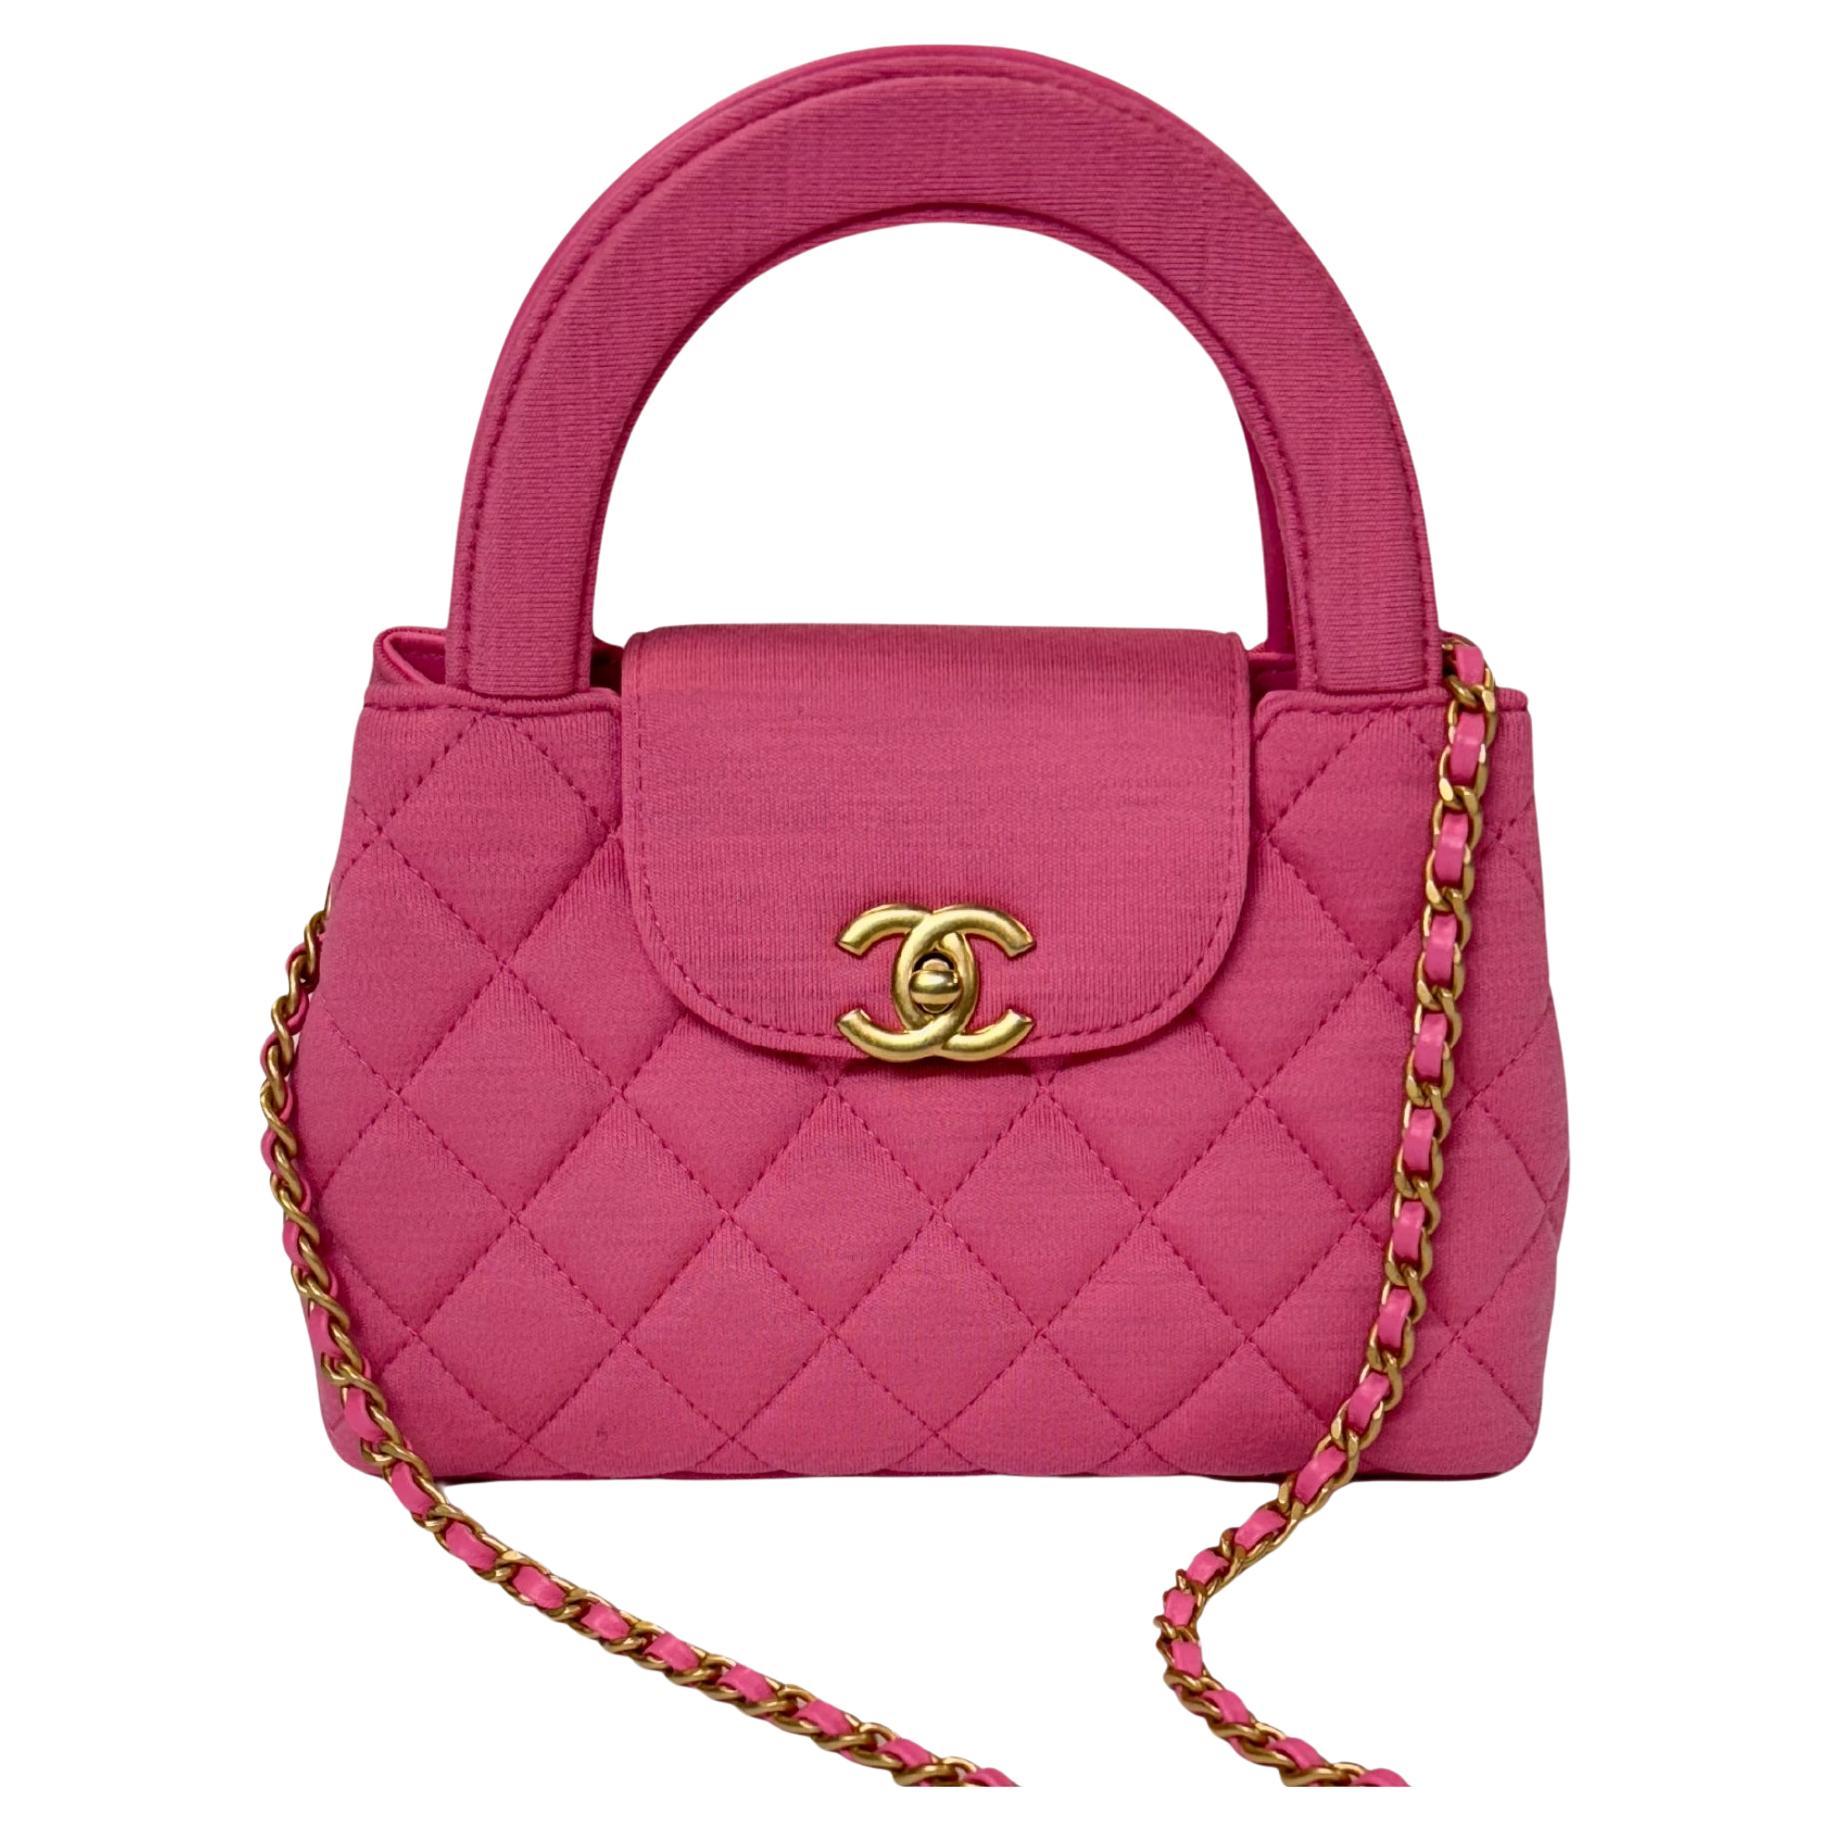 Chanel sac Kelly Shopper rose foncé matelassé avec détails dorés en vente